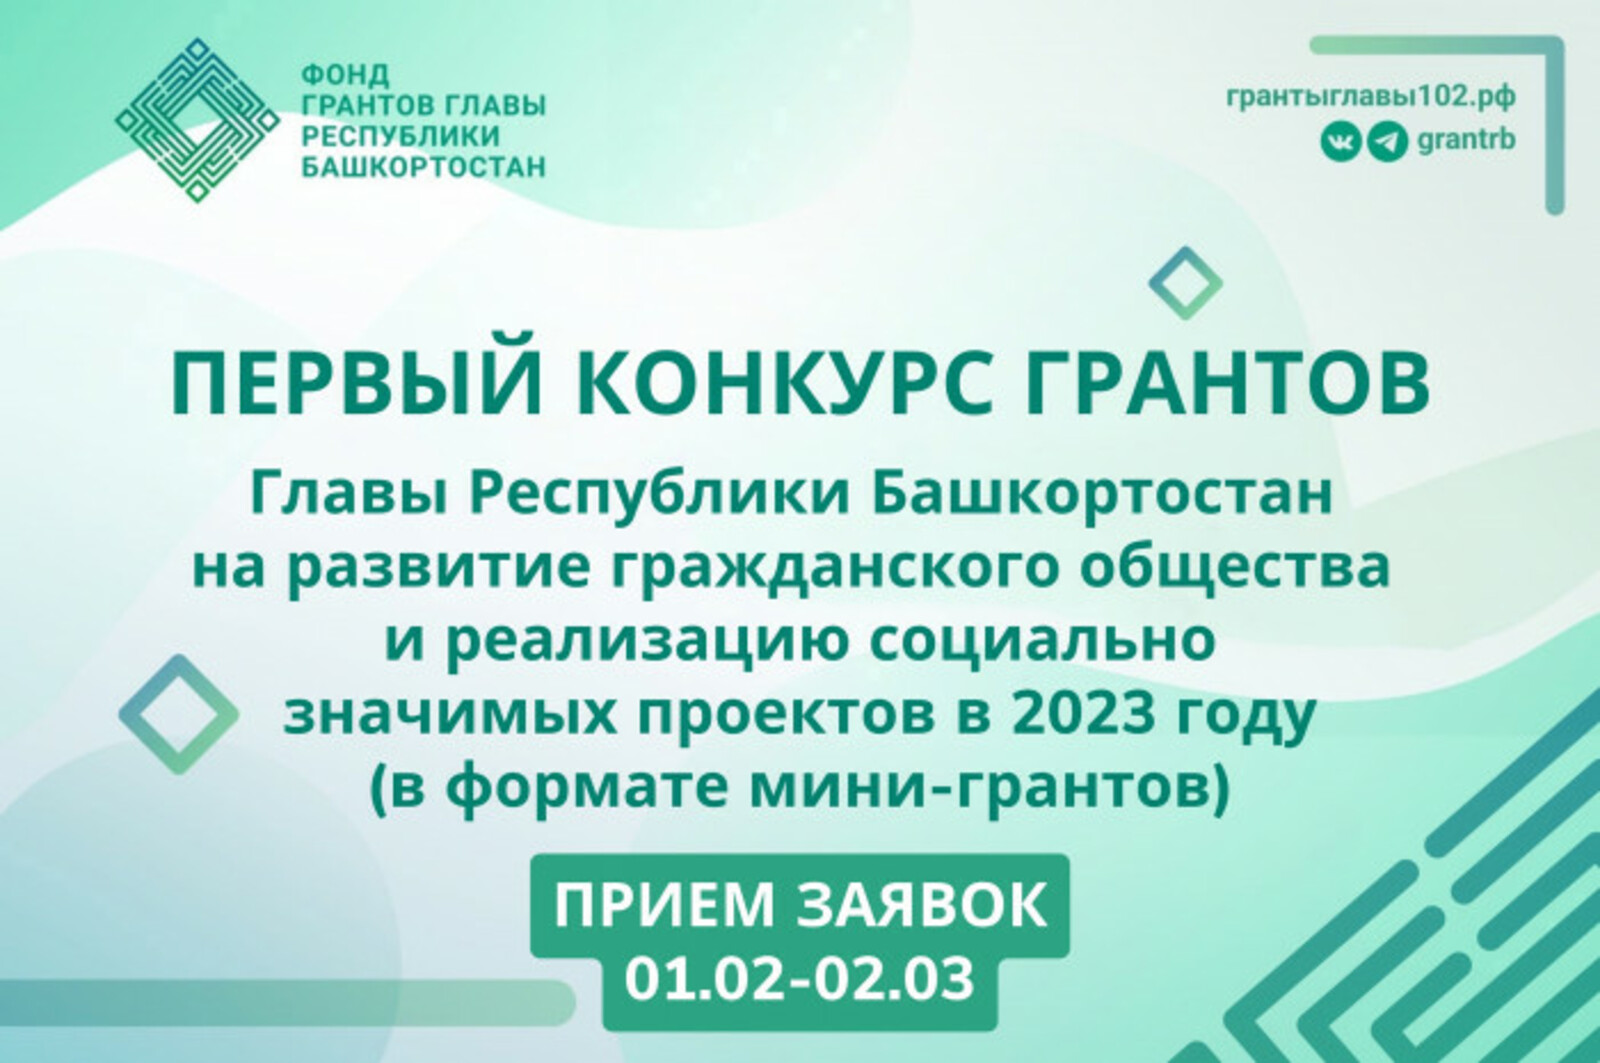 Гранты Главы Республики Башкортостан до полумиллиона рублей смогут получить НКО на социальные проекты